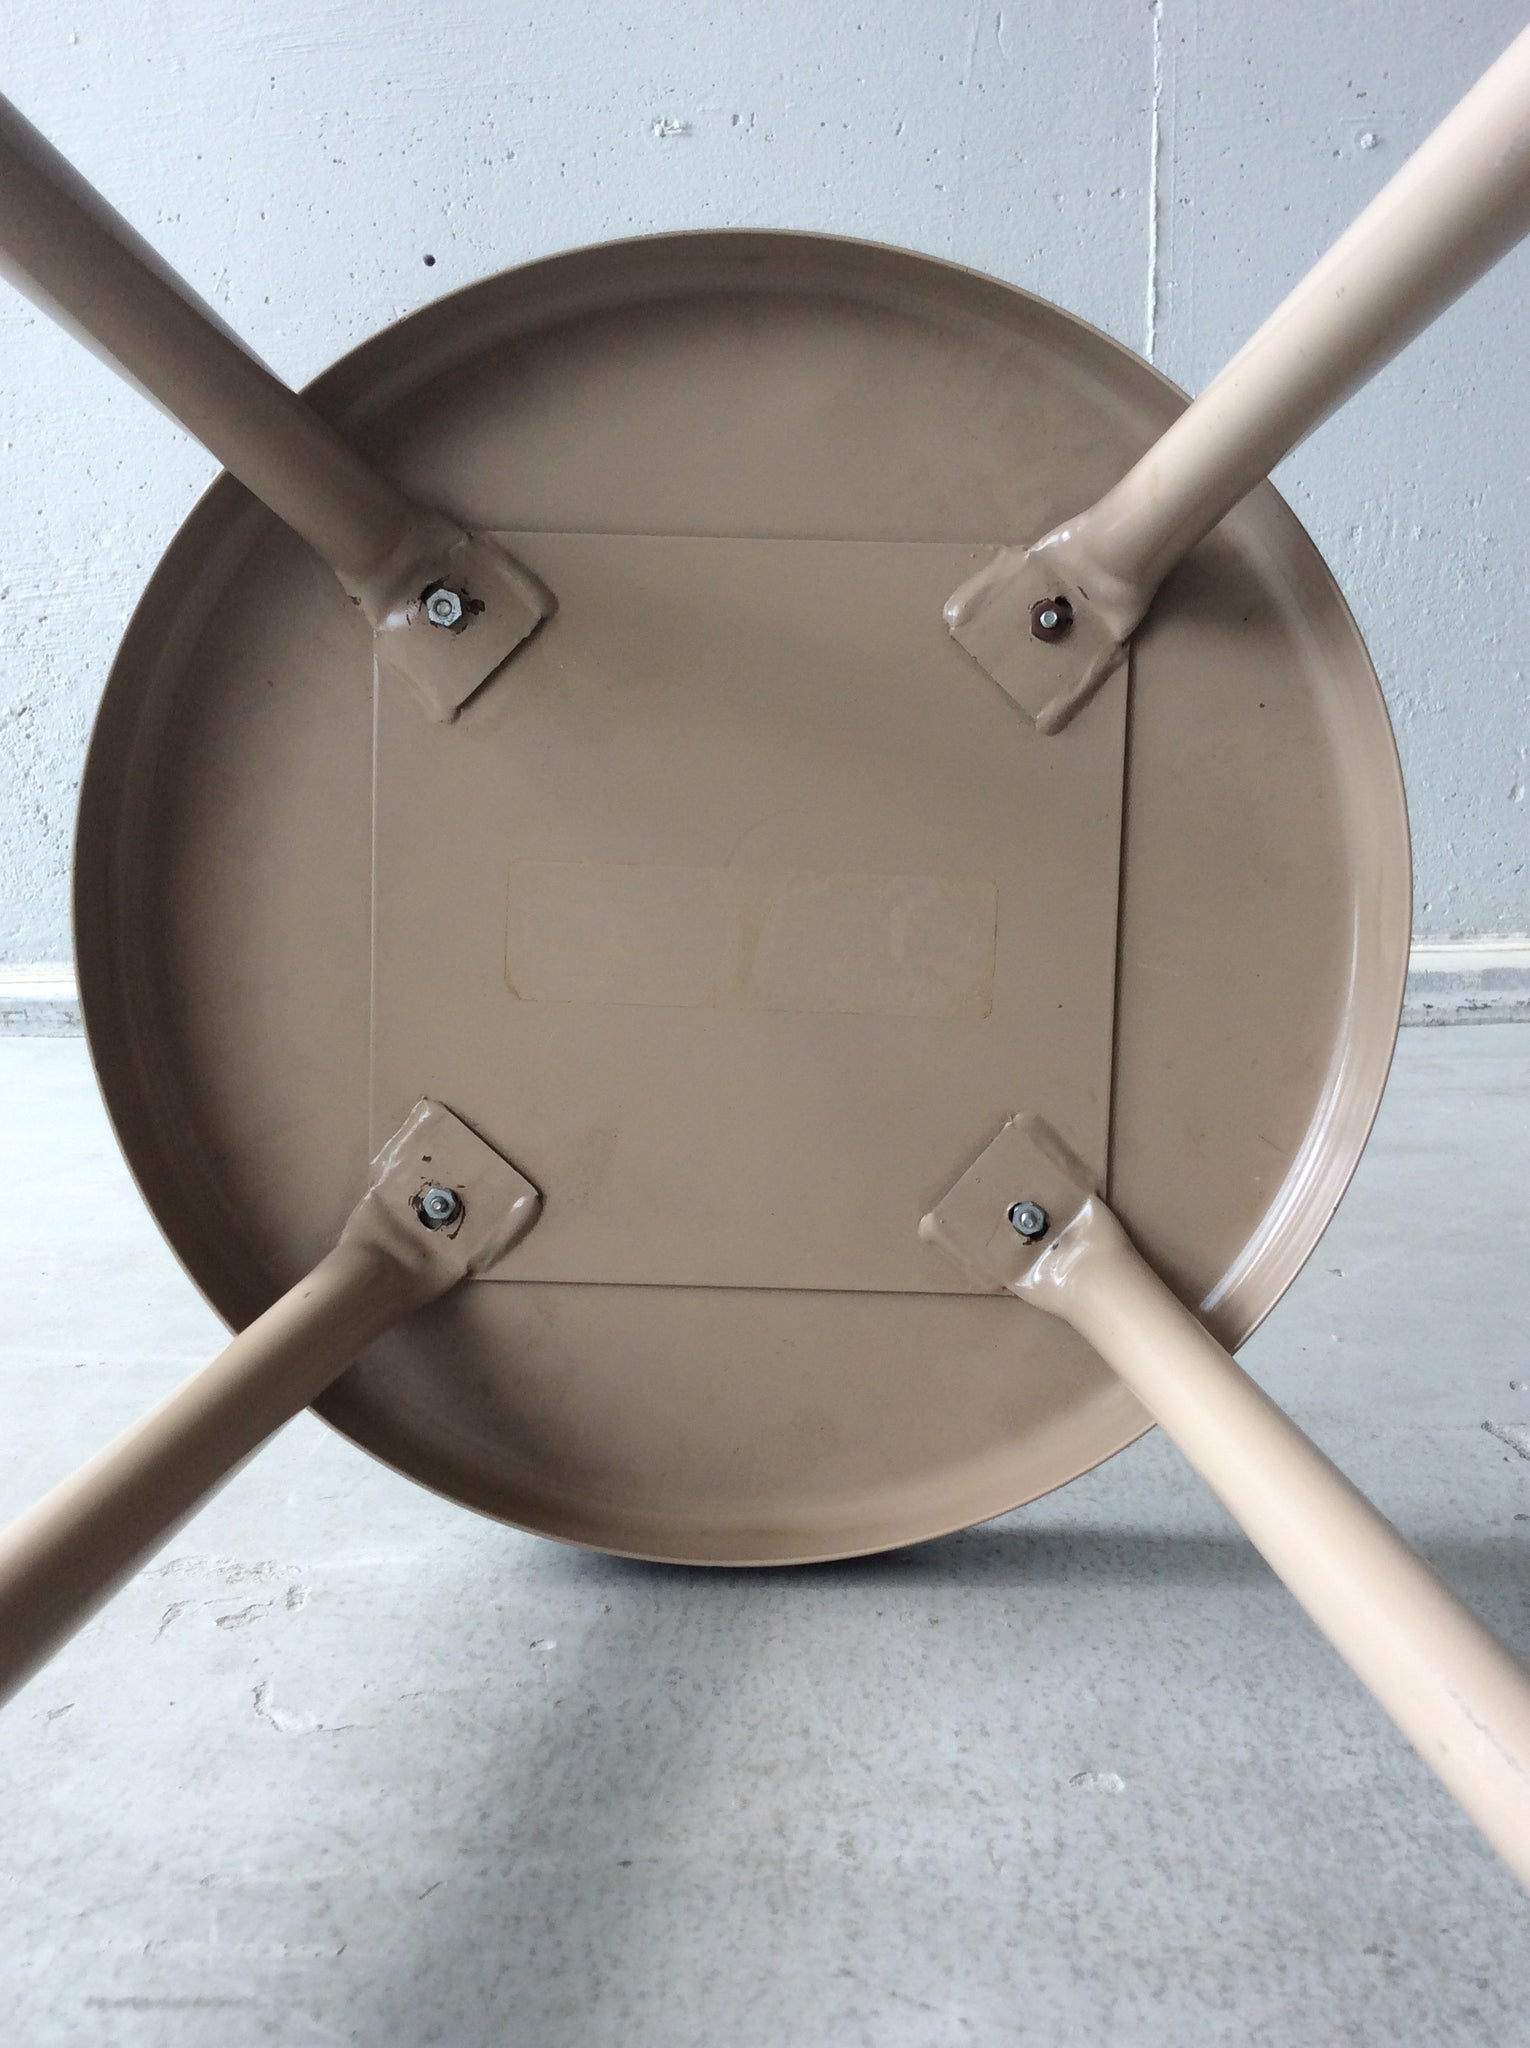 スチール スツール / steel stool #0151